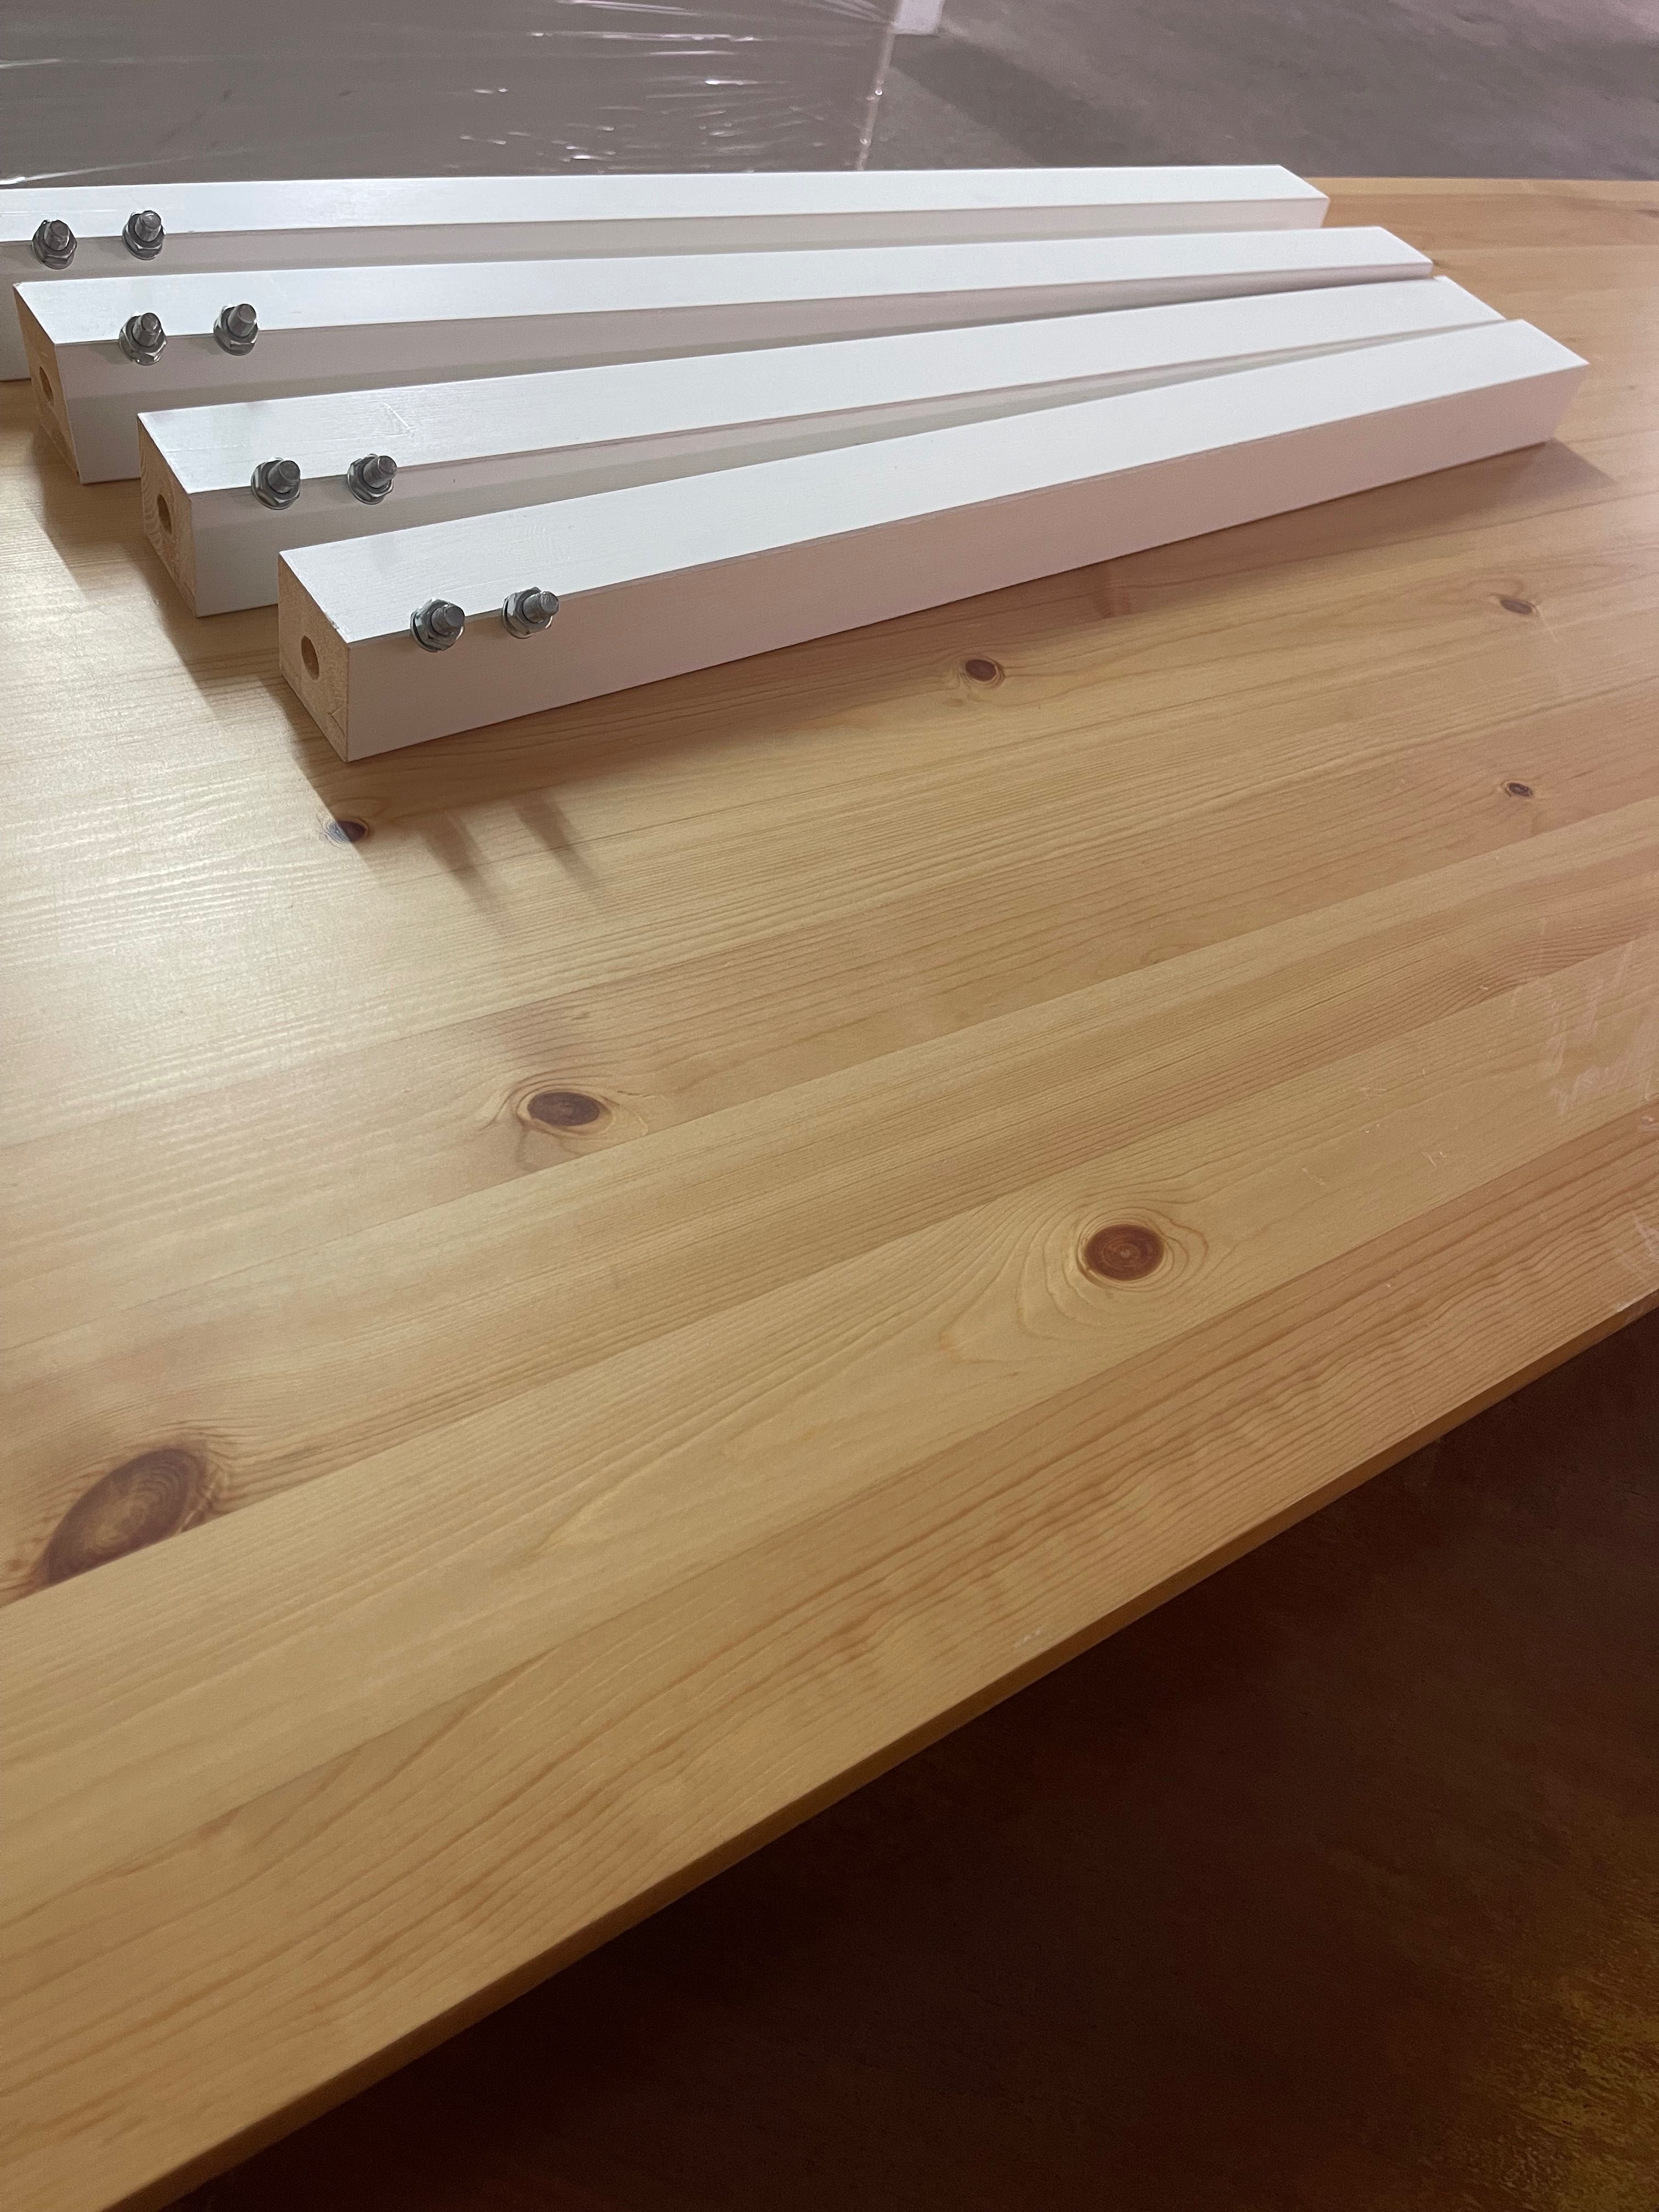 Mesa em Madeira IKEA Pinntorp 185 cm